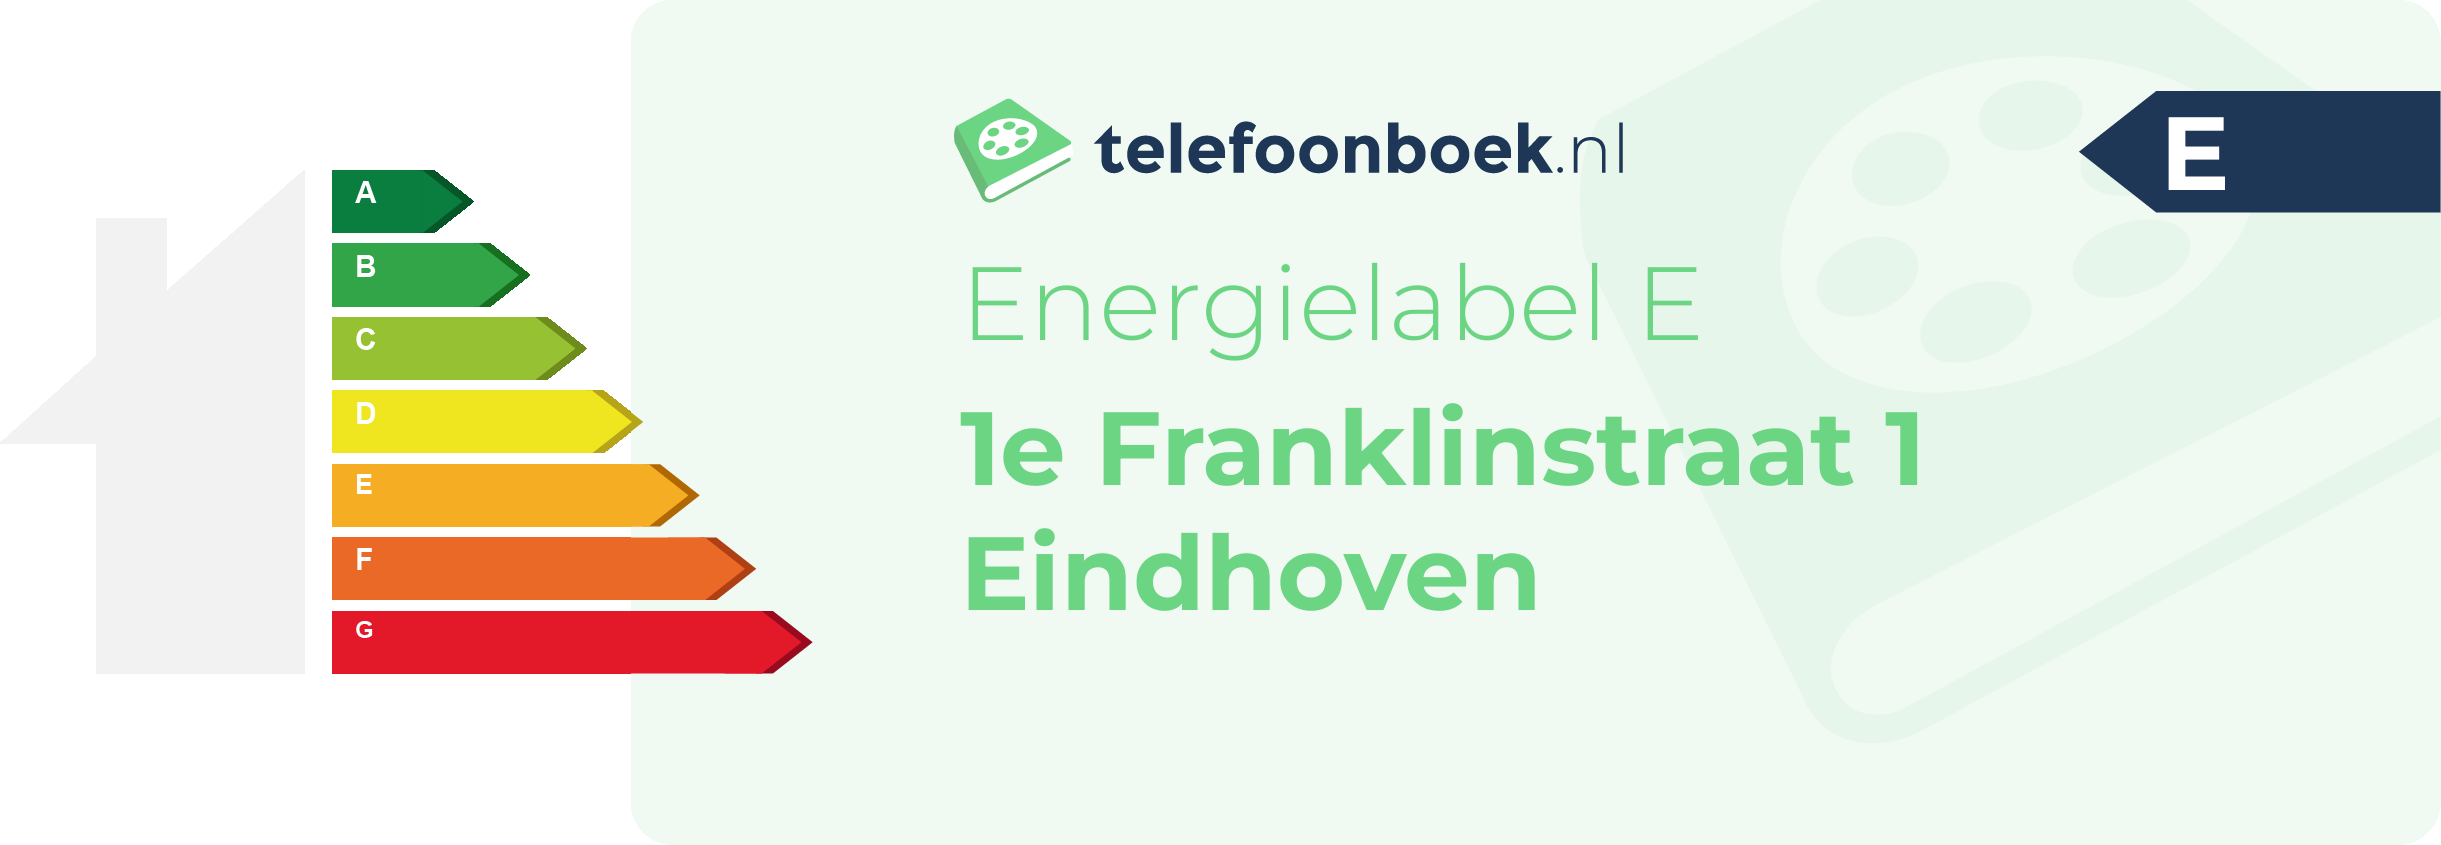 Energielabel 1e Franklinstraat 1 Eindhoven